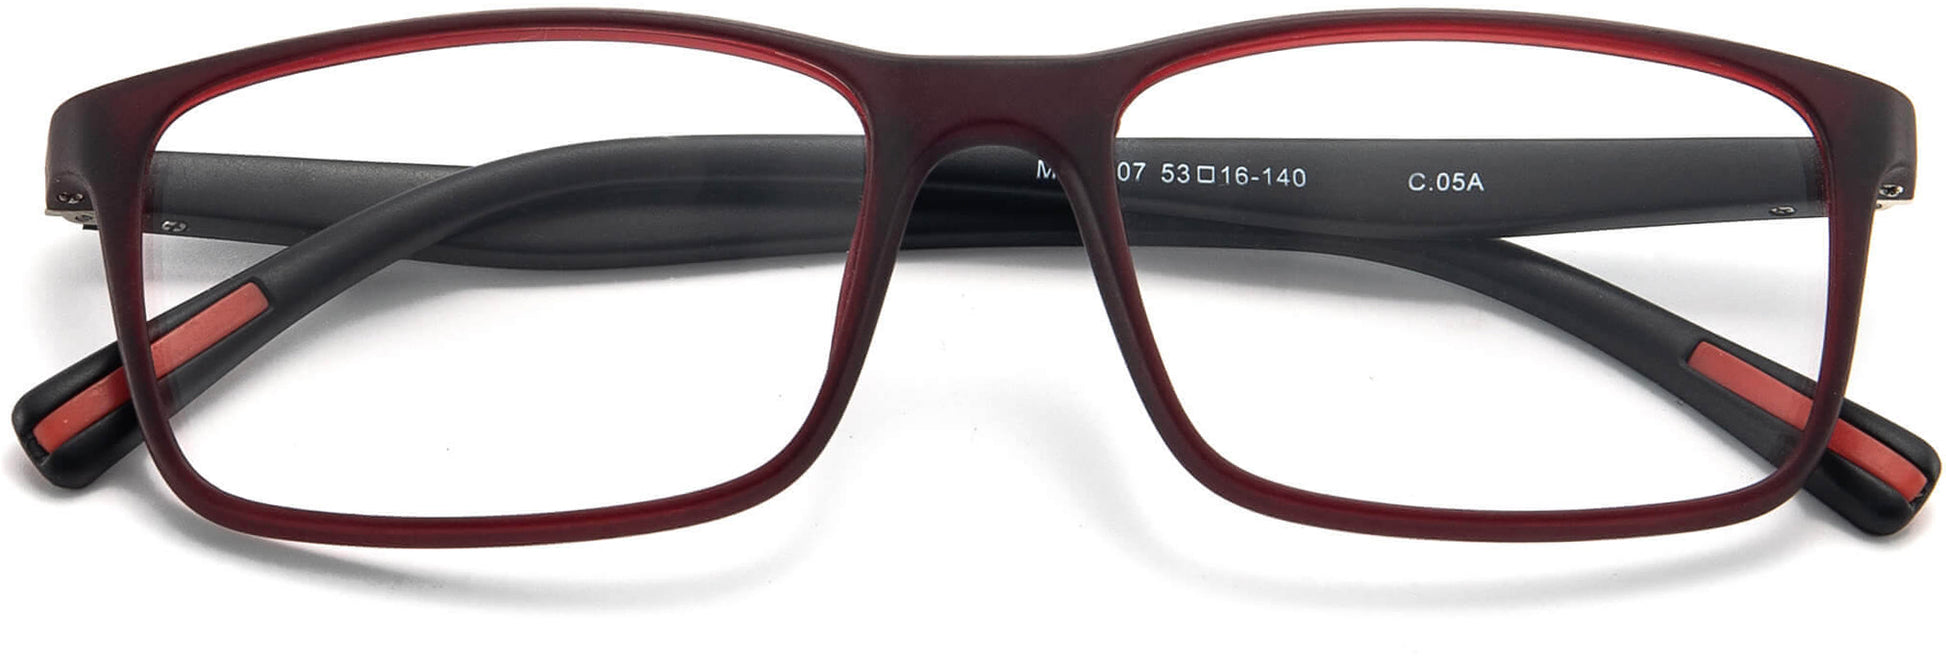 Reid Black TR90 Eyeglasses from ANRRI, Closed View